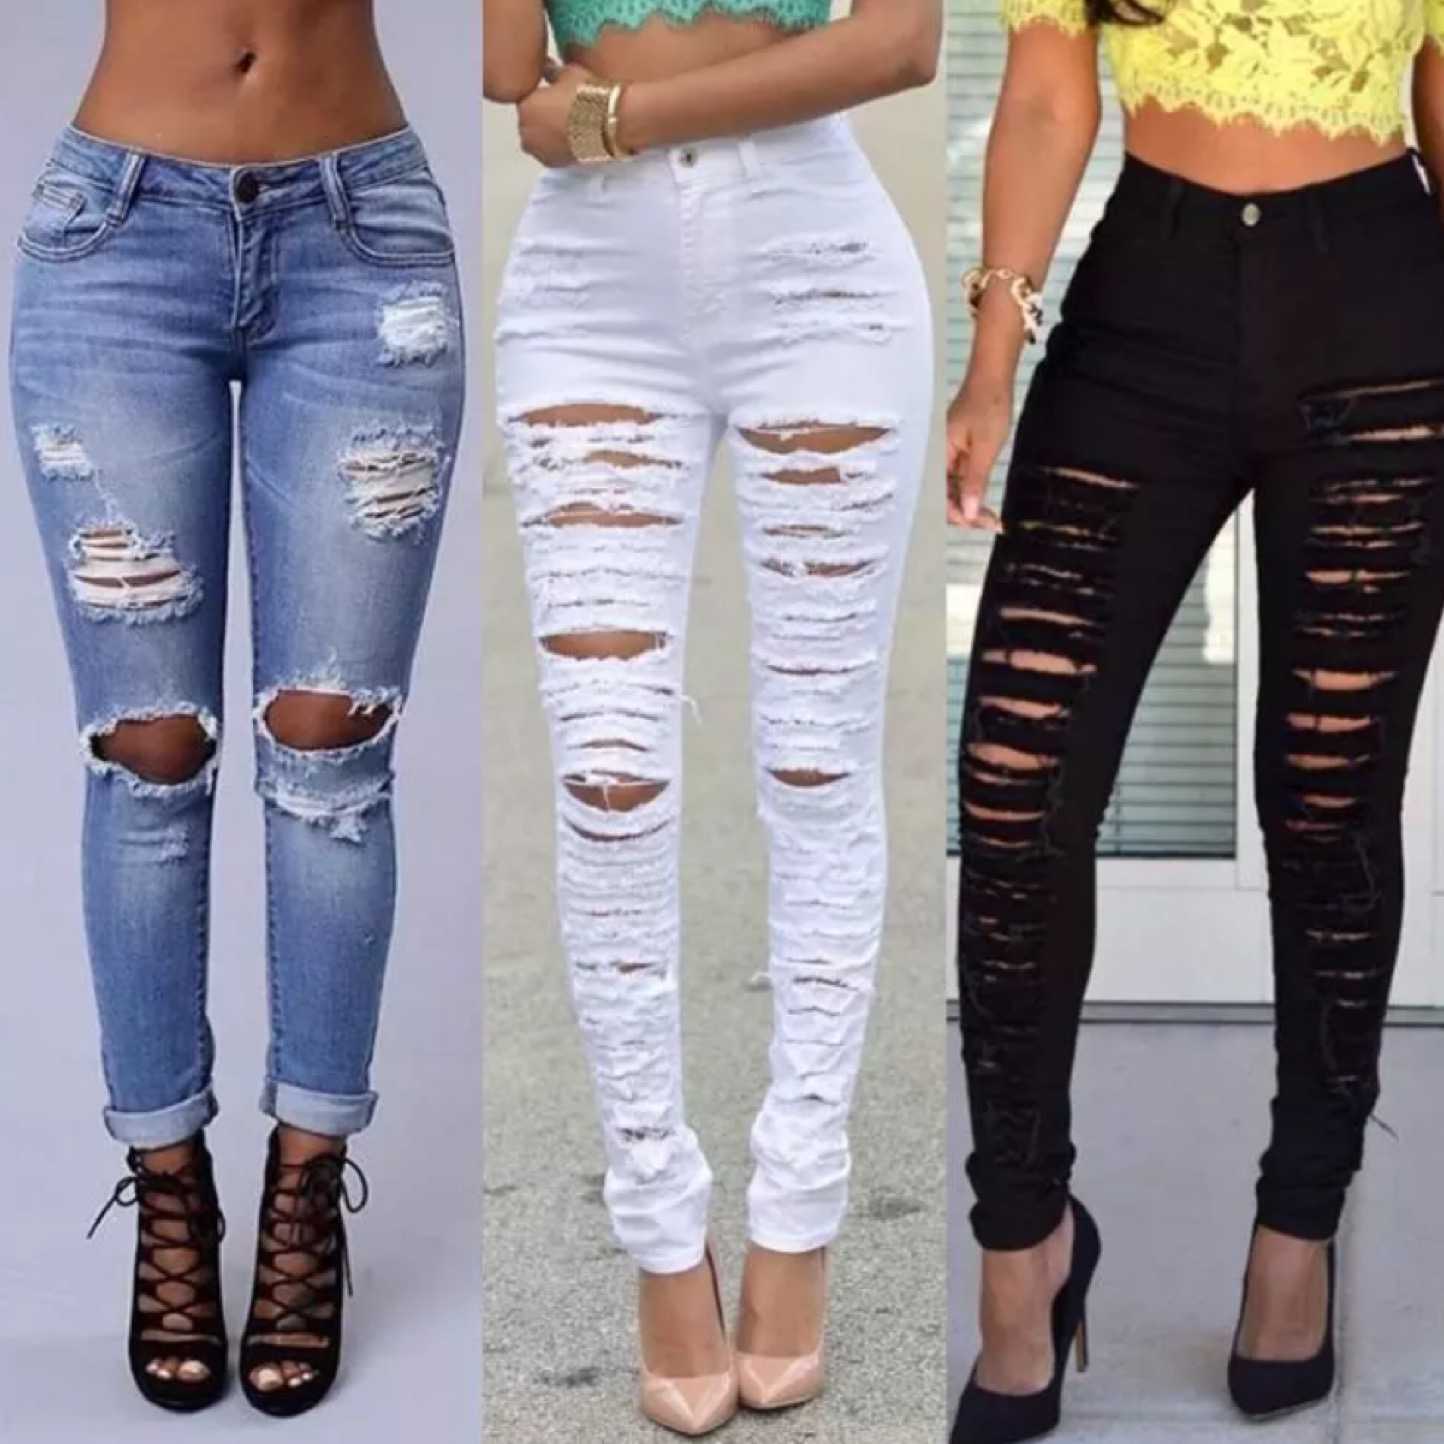 Какие джинсы будут в моде в 2022: цвет, фасон, новинки, тренды с фото